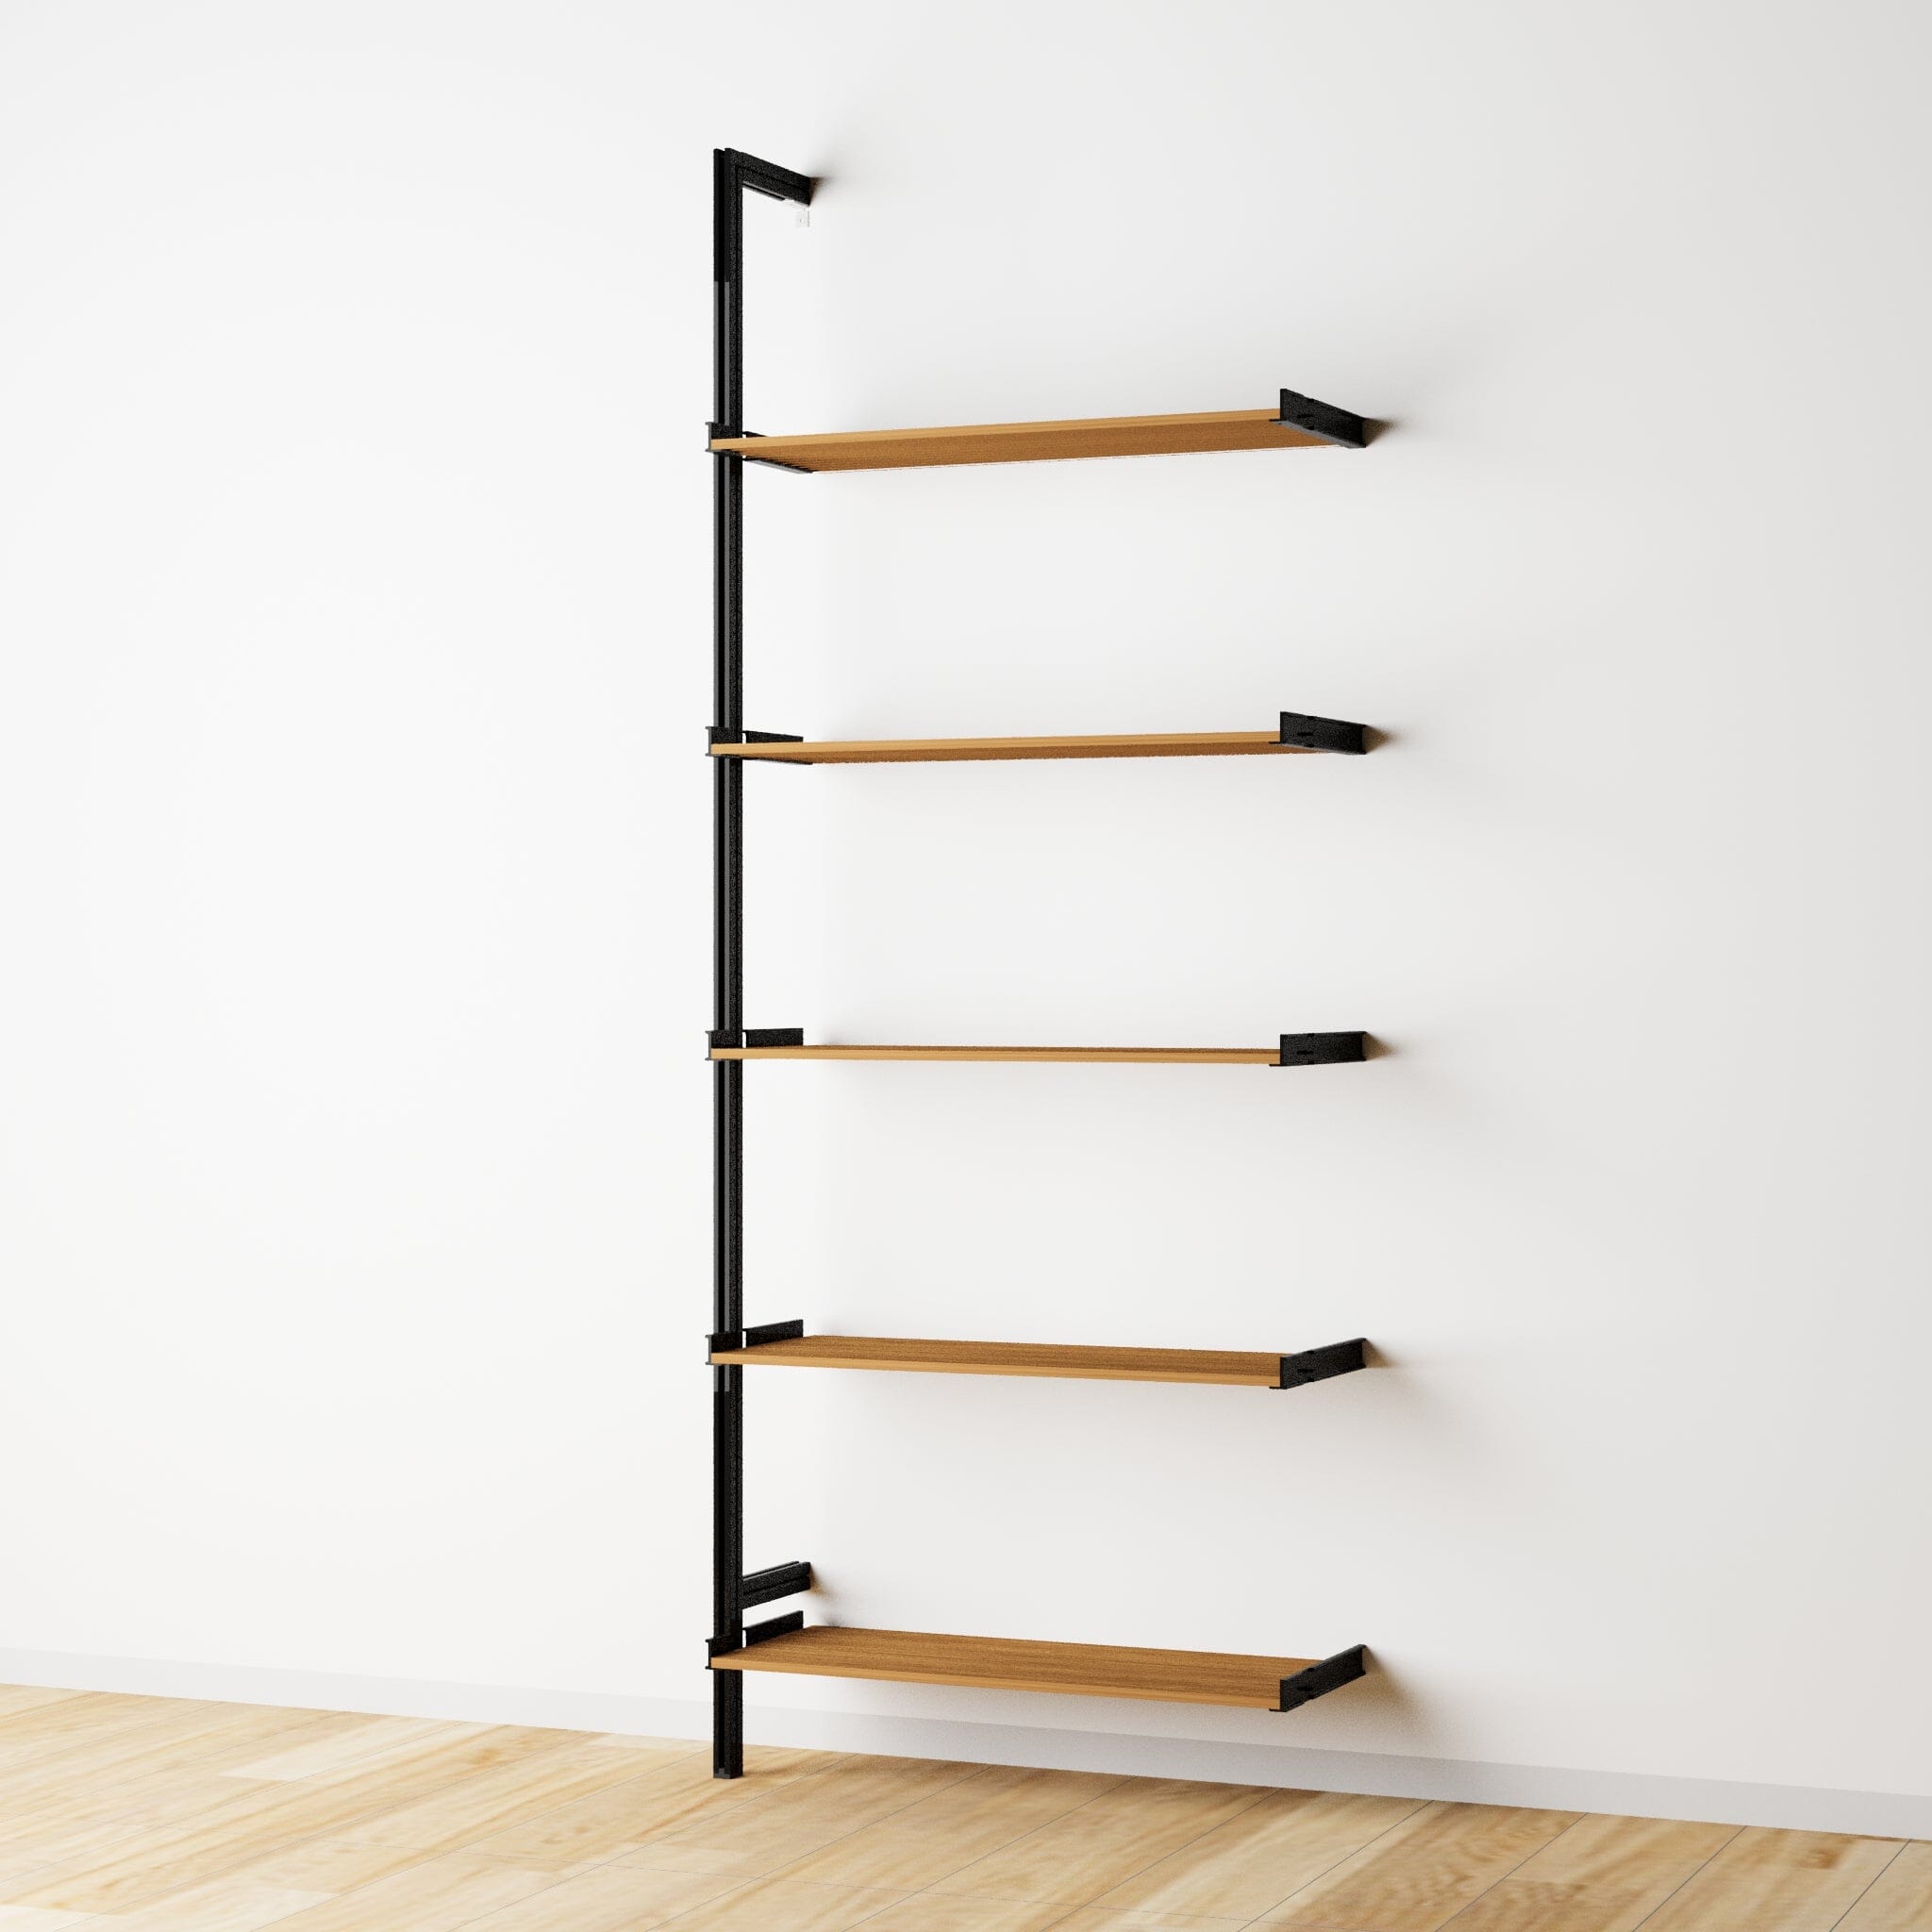 Modular Shelving Units - Wood Shelves